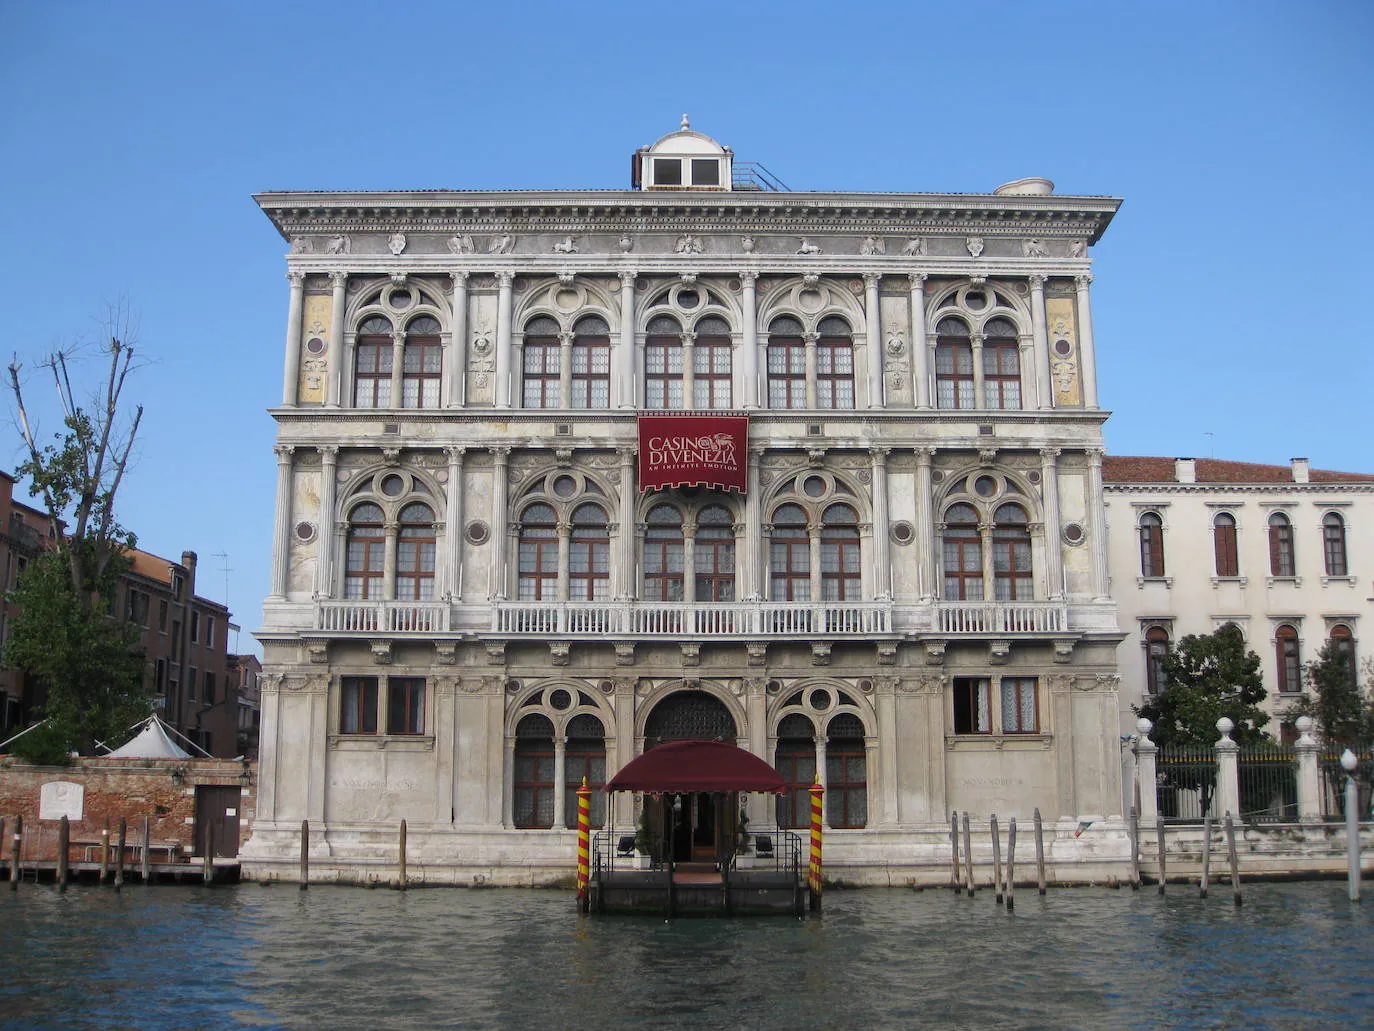 El más antiguo y señorial | Podría ser catalogado como uno de los más bellos, aunque hay mucha competencia, o el más elegante, pero lo que nadie discute es que es el más antiguo. Tiene medio milenio de vida y más de 450 años como casino (el de Mónaco es de 1856). El Casino di Venezia o Casino Ca´Vendramin Calergi se encuentra en el Gran Canal de Venecia, en un gran palacio de la época del Renacimiento, ya que se empezó a construir en 1489, abriendo sus puertas en 1509 y se convirtió en casino en 1638. El palacio está ornamentado con columnas de estilo clásico grecorromano en cada nivel de la fachada y sus opulentos trabajos de pintura, escultura y candelabros, hacen que la decoración interior del casino sea incluso más gloriosa que la fachada. Los techos están pintados por Mattia Bortoloni, maestro de arte barroco. Una curiosidad es que aquí murió el afamado compositor Richard Wagner de un infarto cuando tenía 69 años. Por esta razón dentro de las instalaciones del Casino di Venezia se encuentra el Museo Wagner que cuenta con una gran colección de objetos pertenecientes al compositor. 